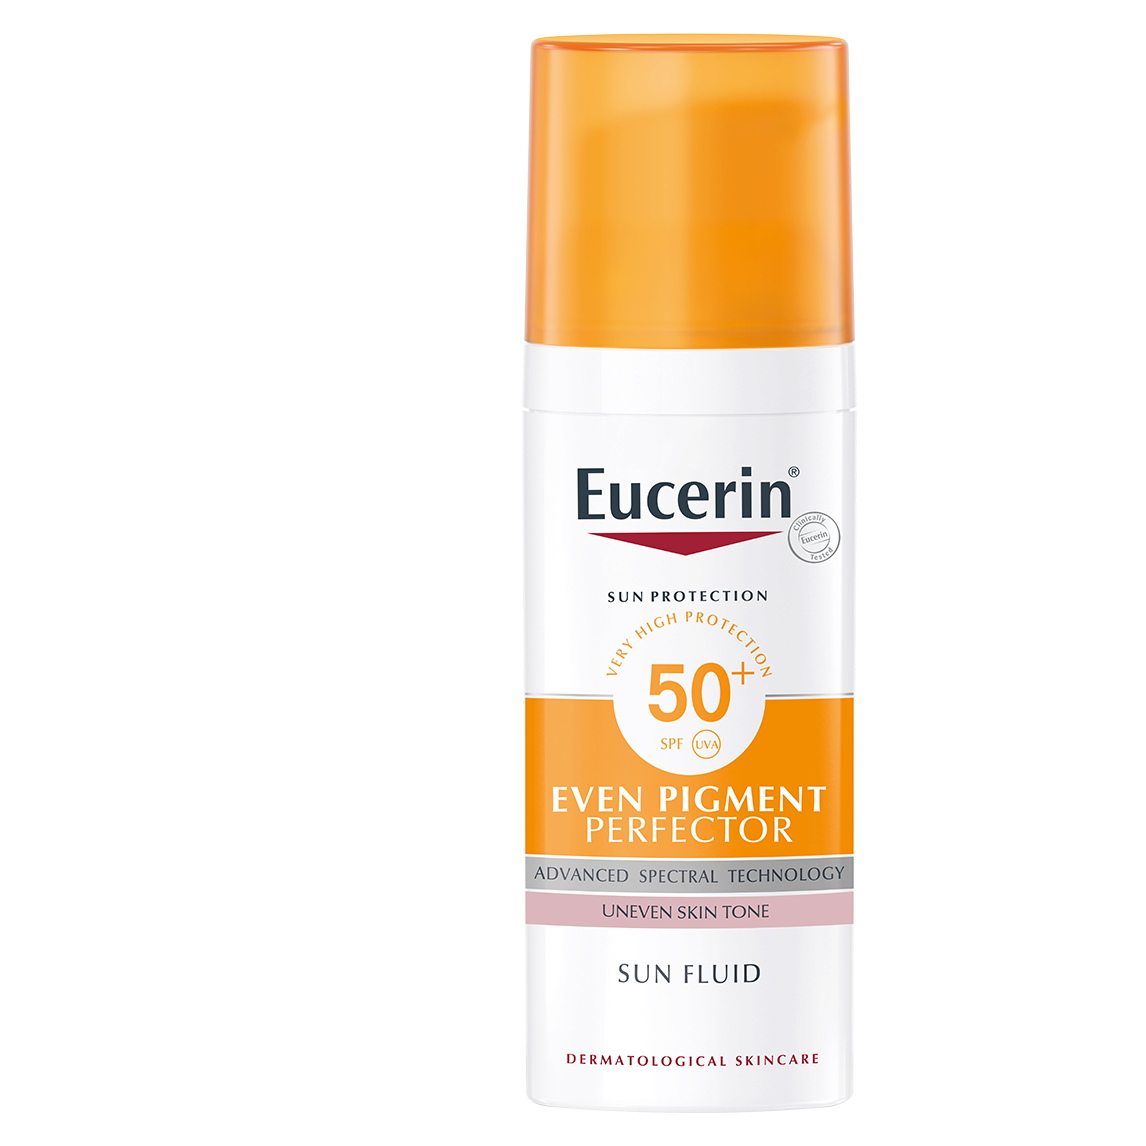 Eucerin Sun Fluid Even Pigment Perfector SPF 50+